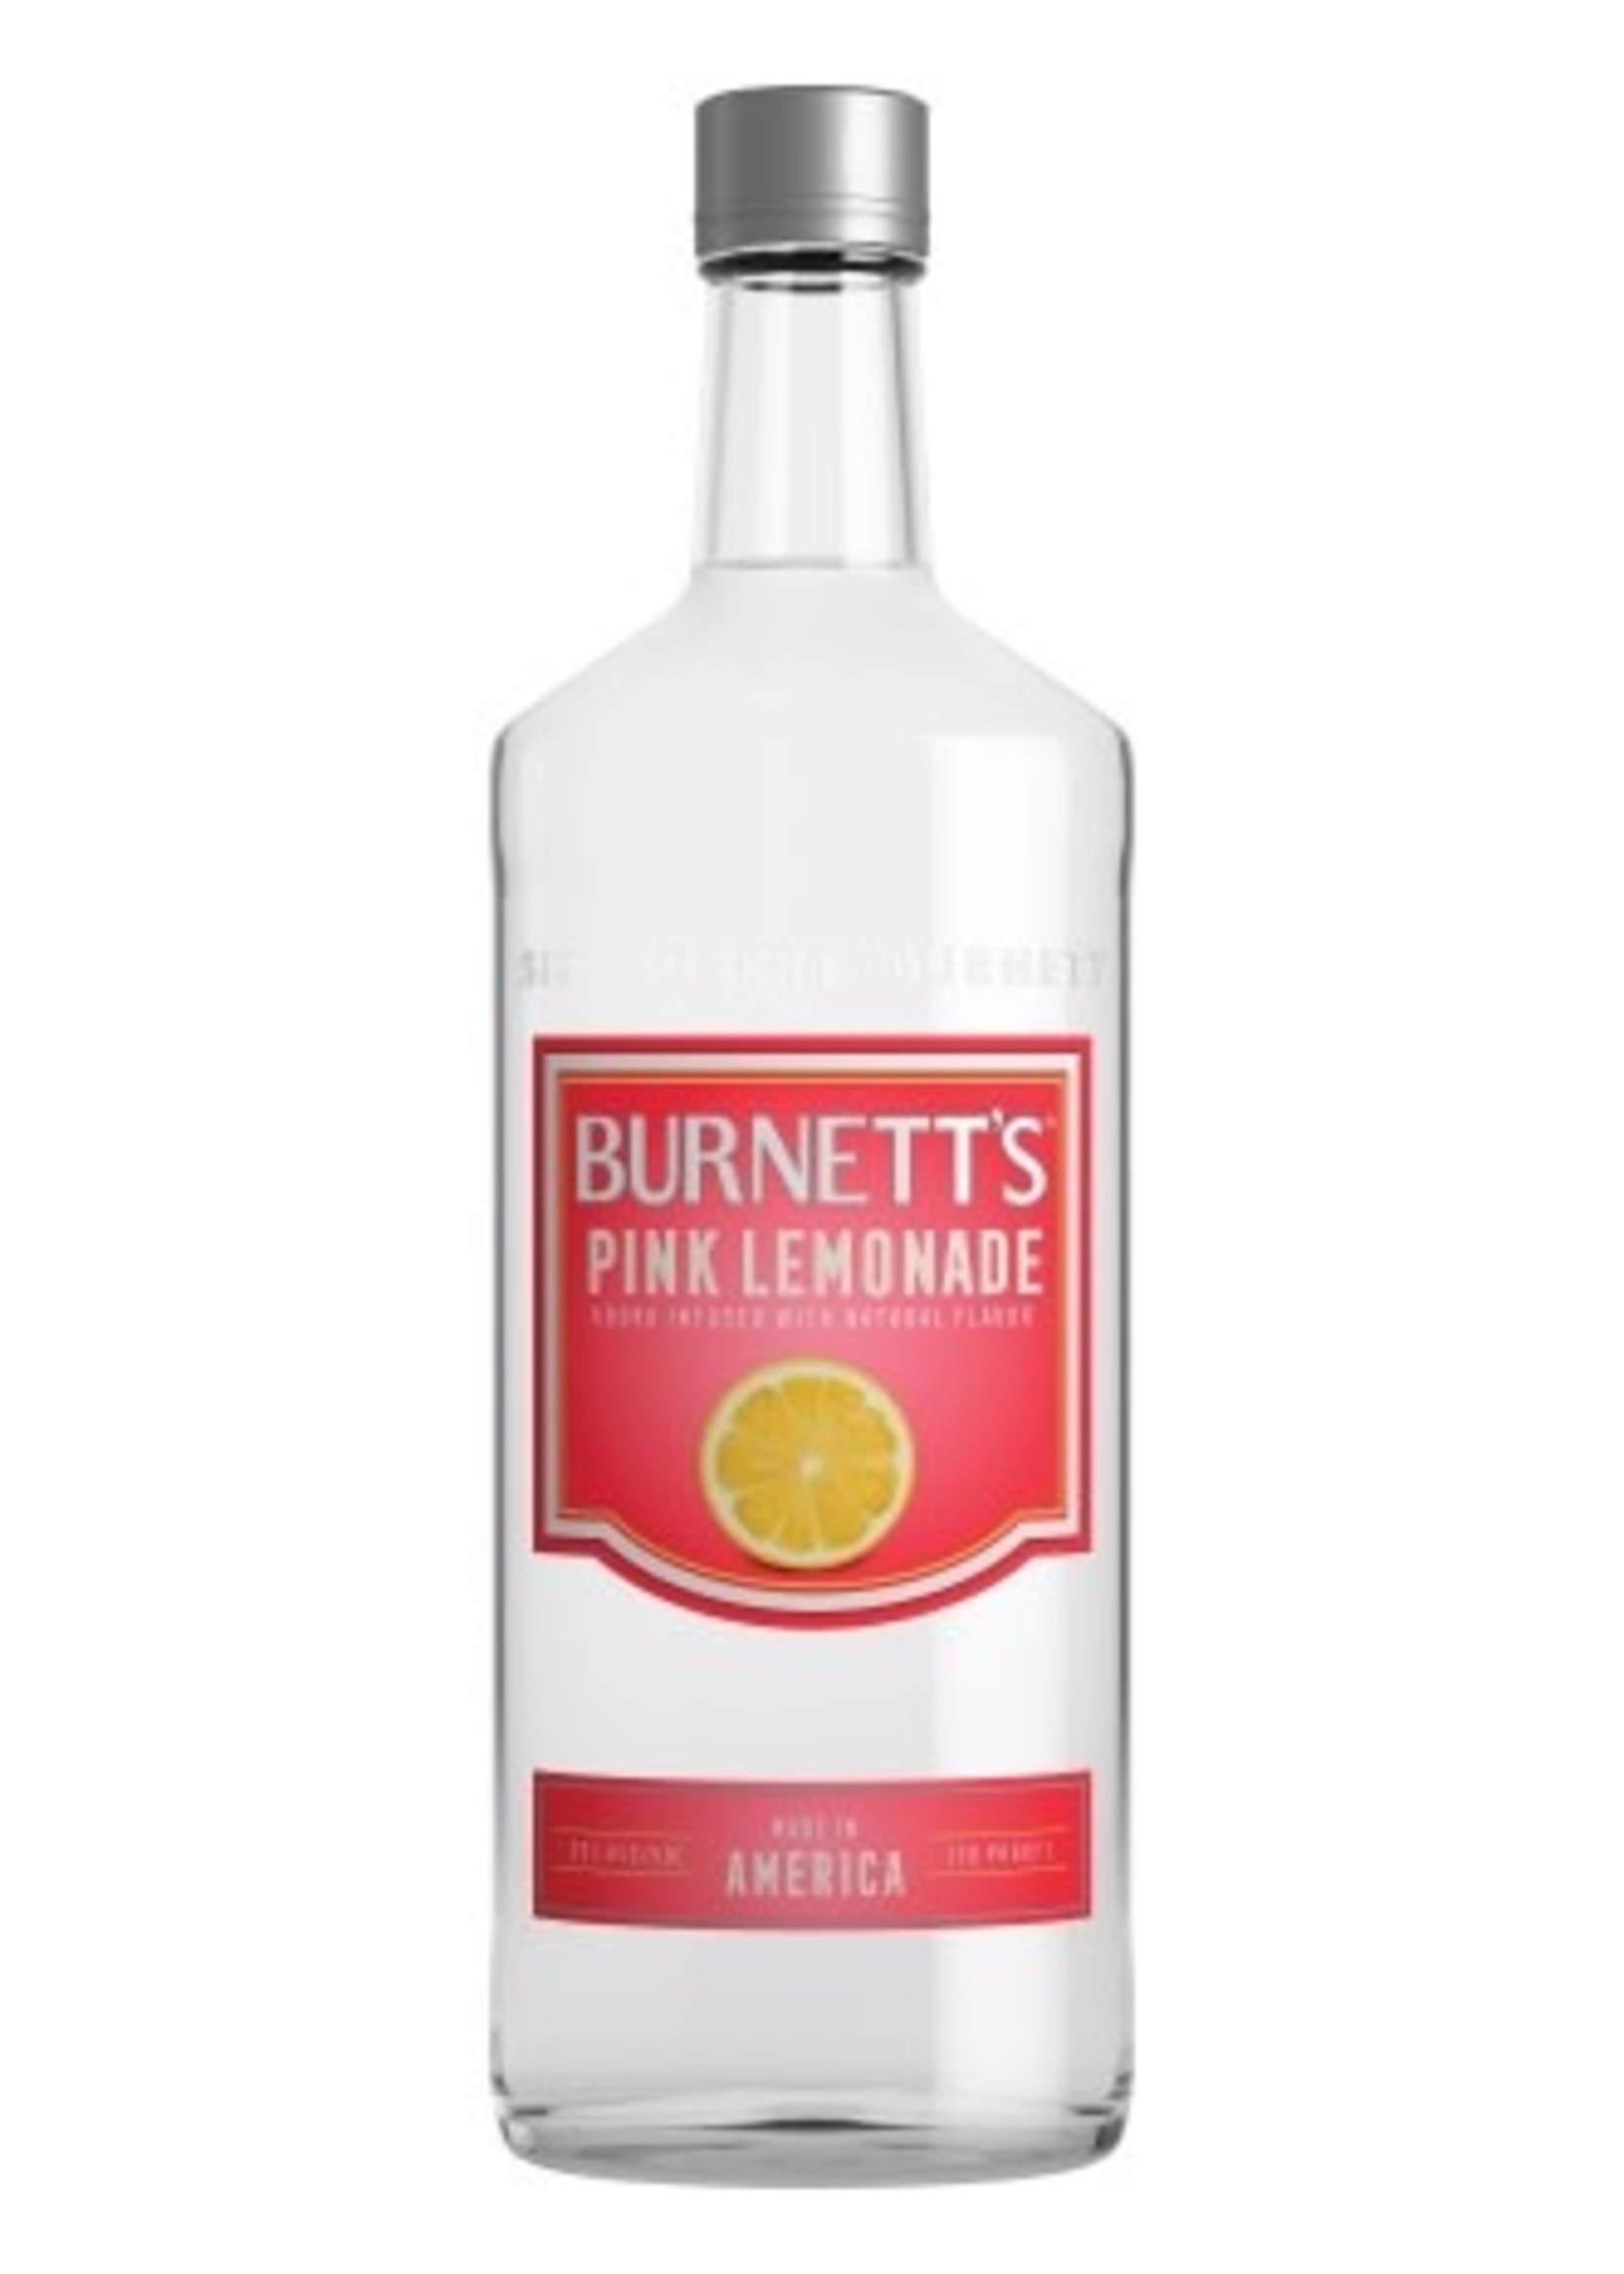 BURNETT'S BURNETT'S PINK LEMONADE VODKA	1.75L